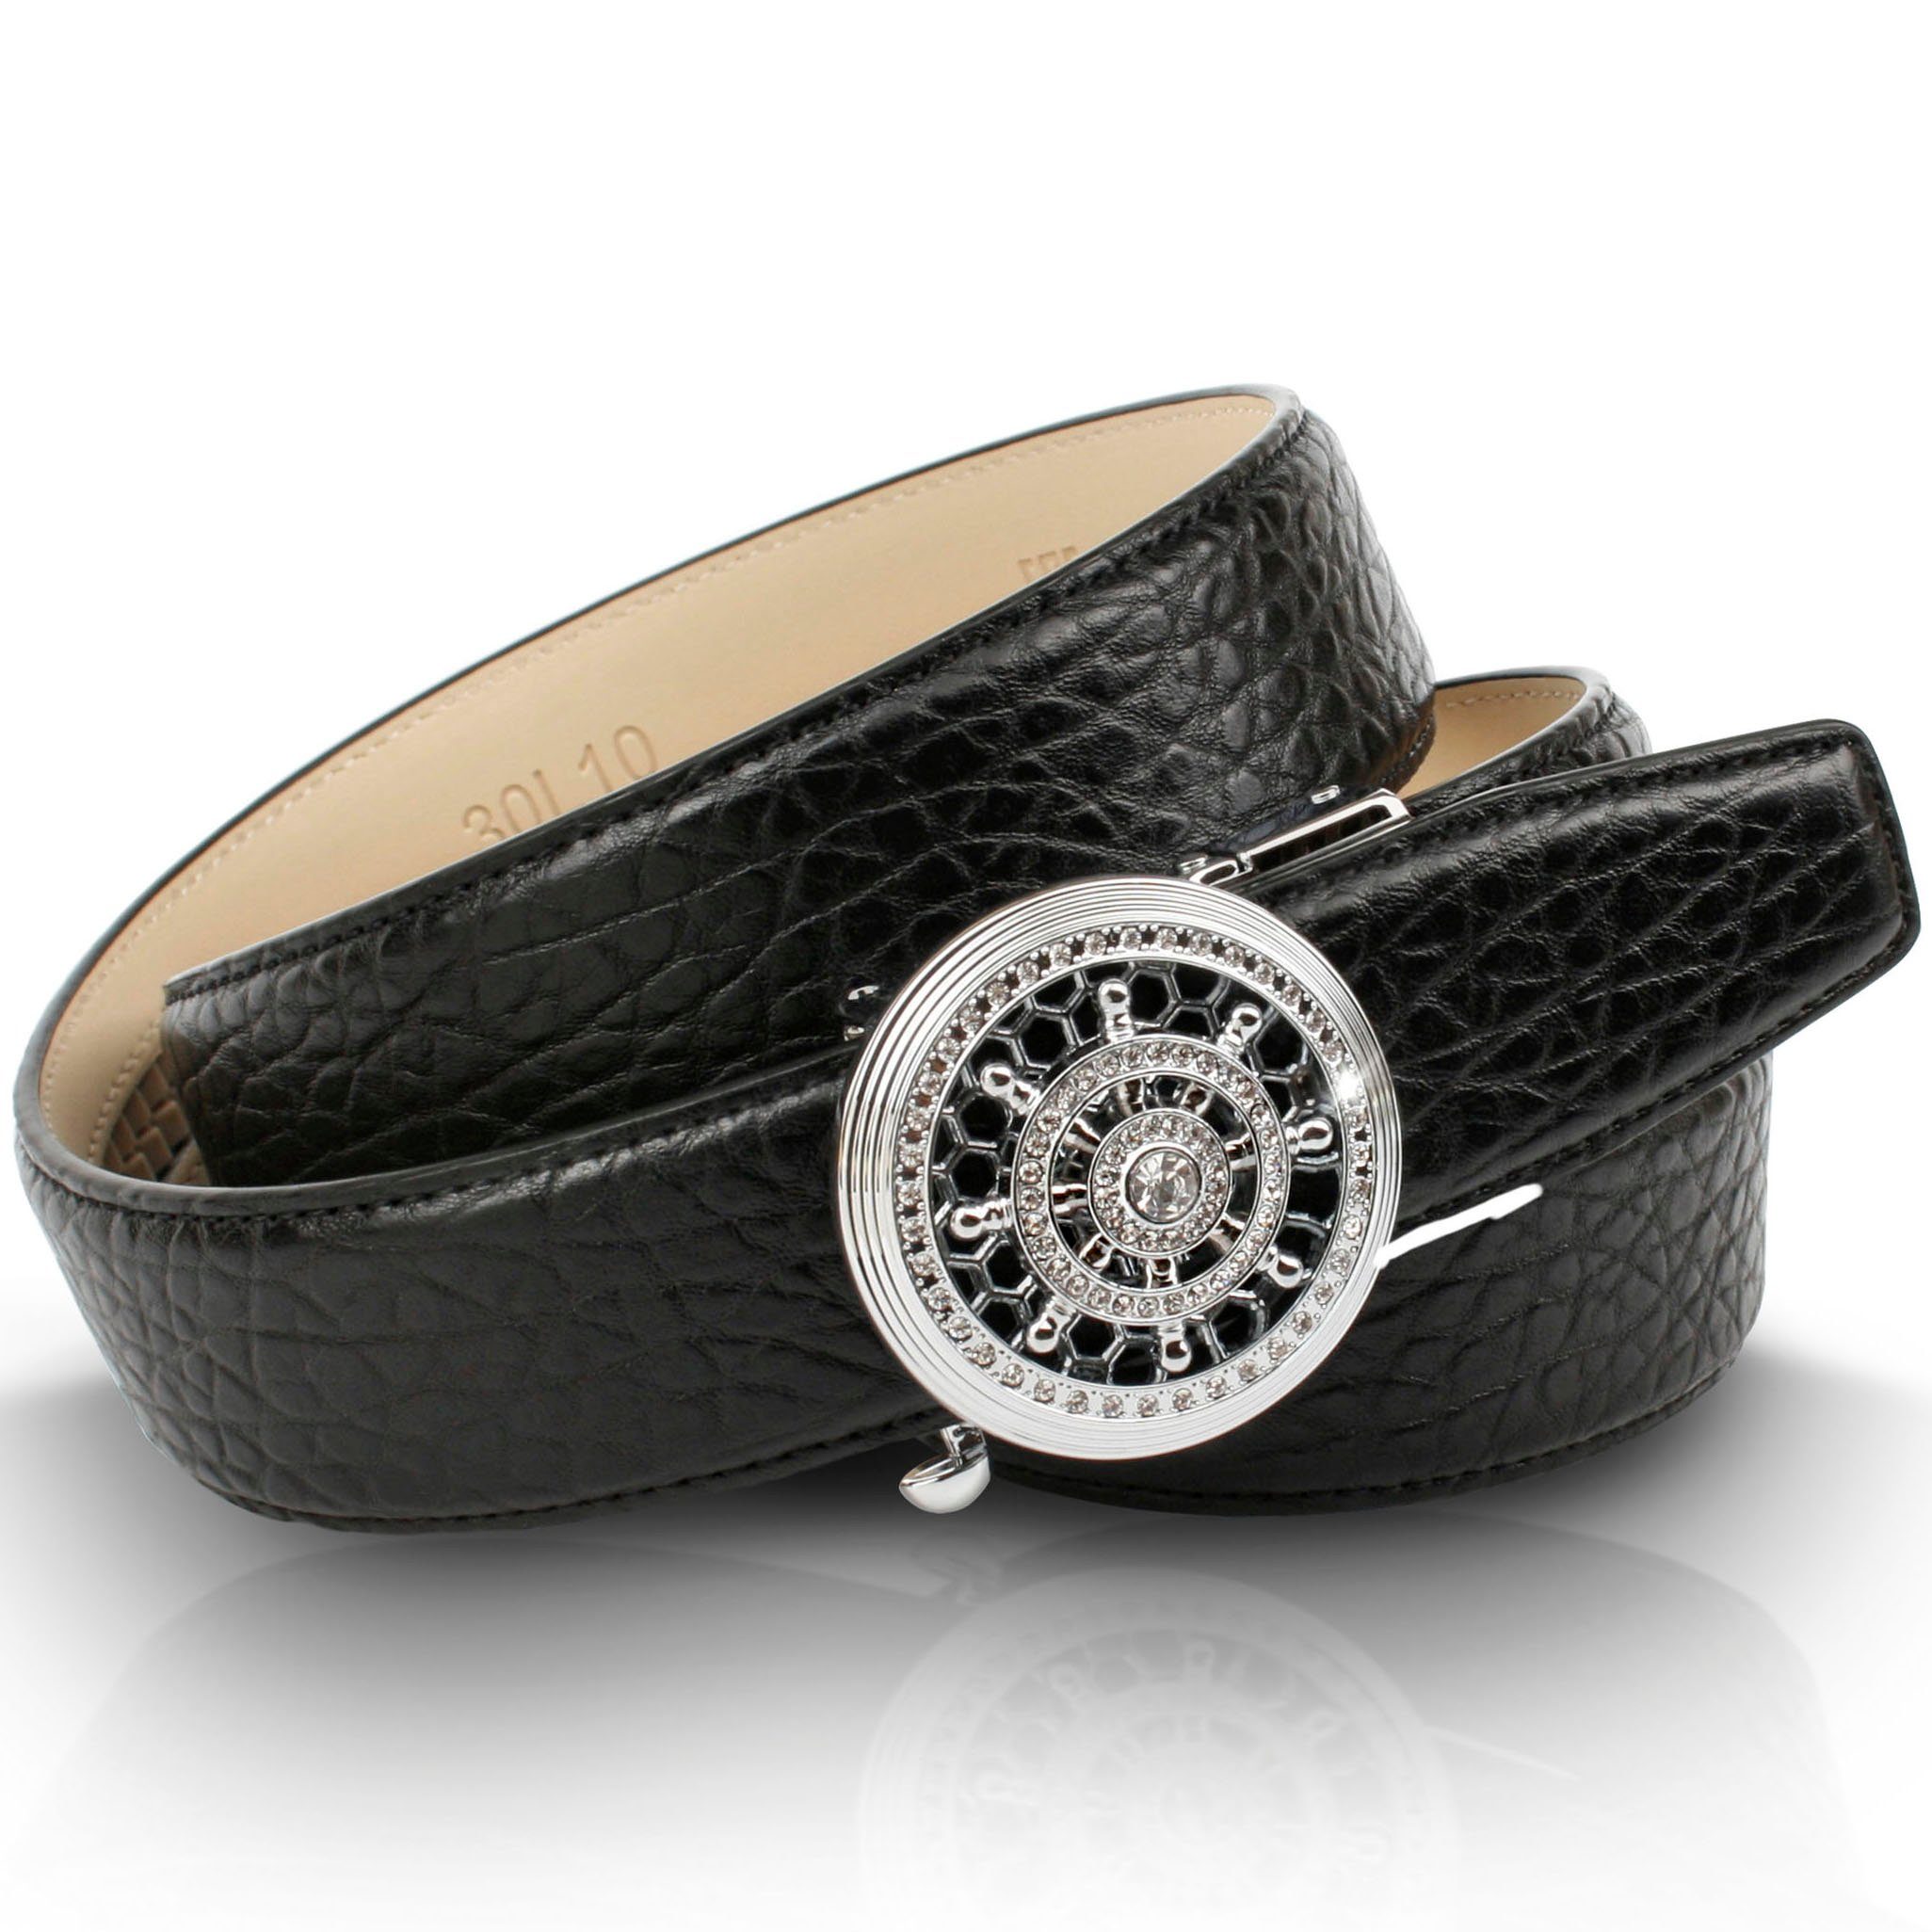 Anthoni Crown Ledergürtel mit silberfarbener Automatik-Schließe und drehendem Steuerruder | Anzuggürtel